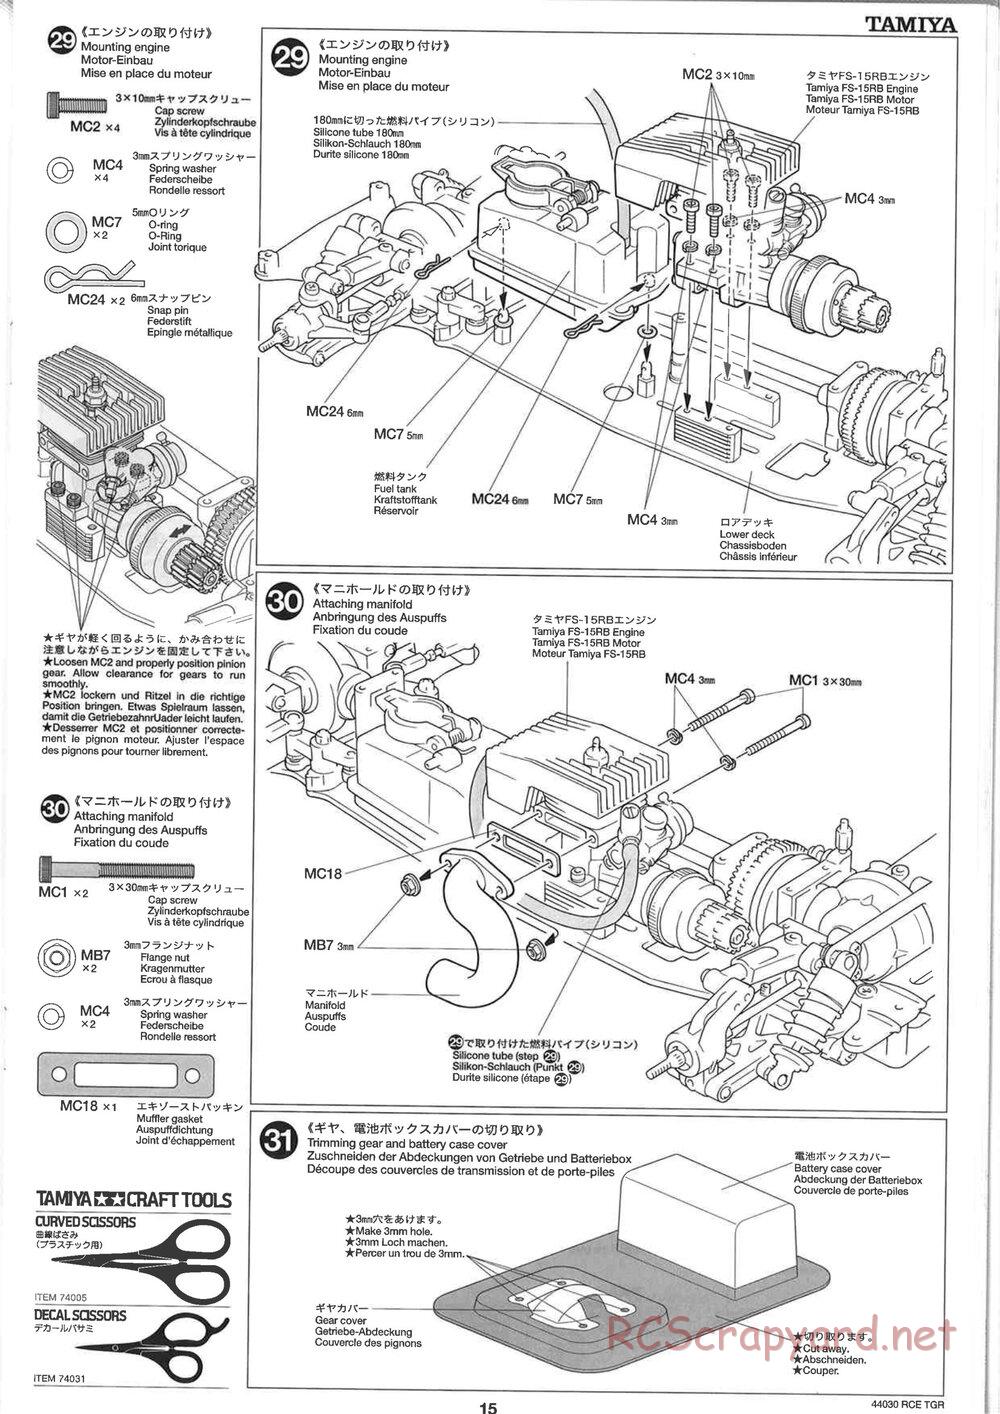 Tamiya - TGR Chassis - Manual - Page 15